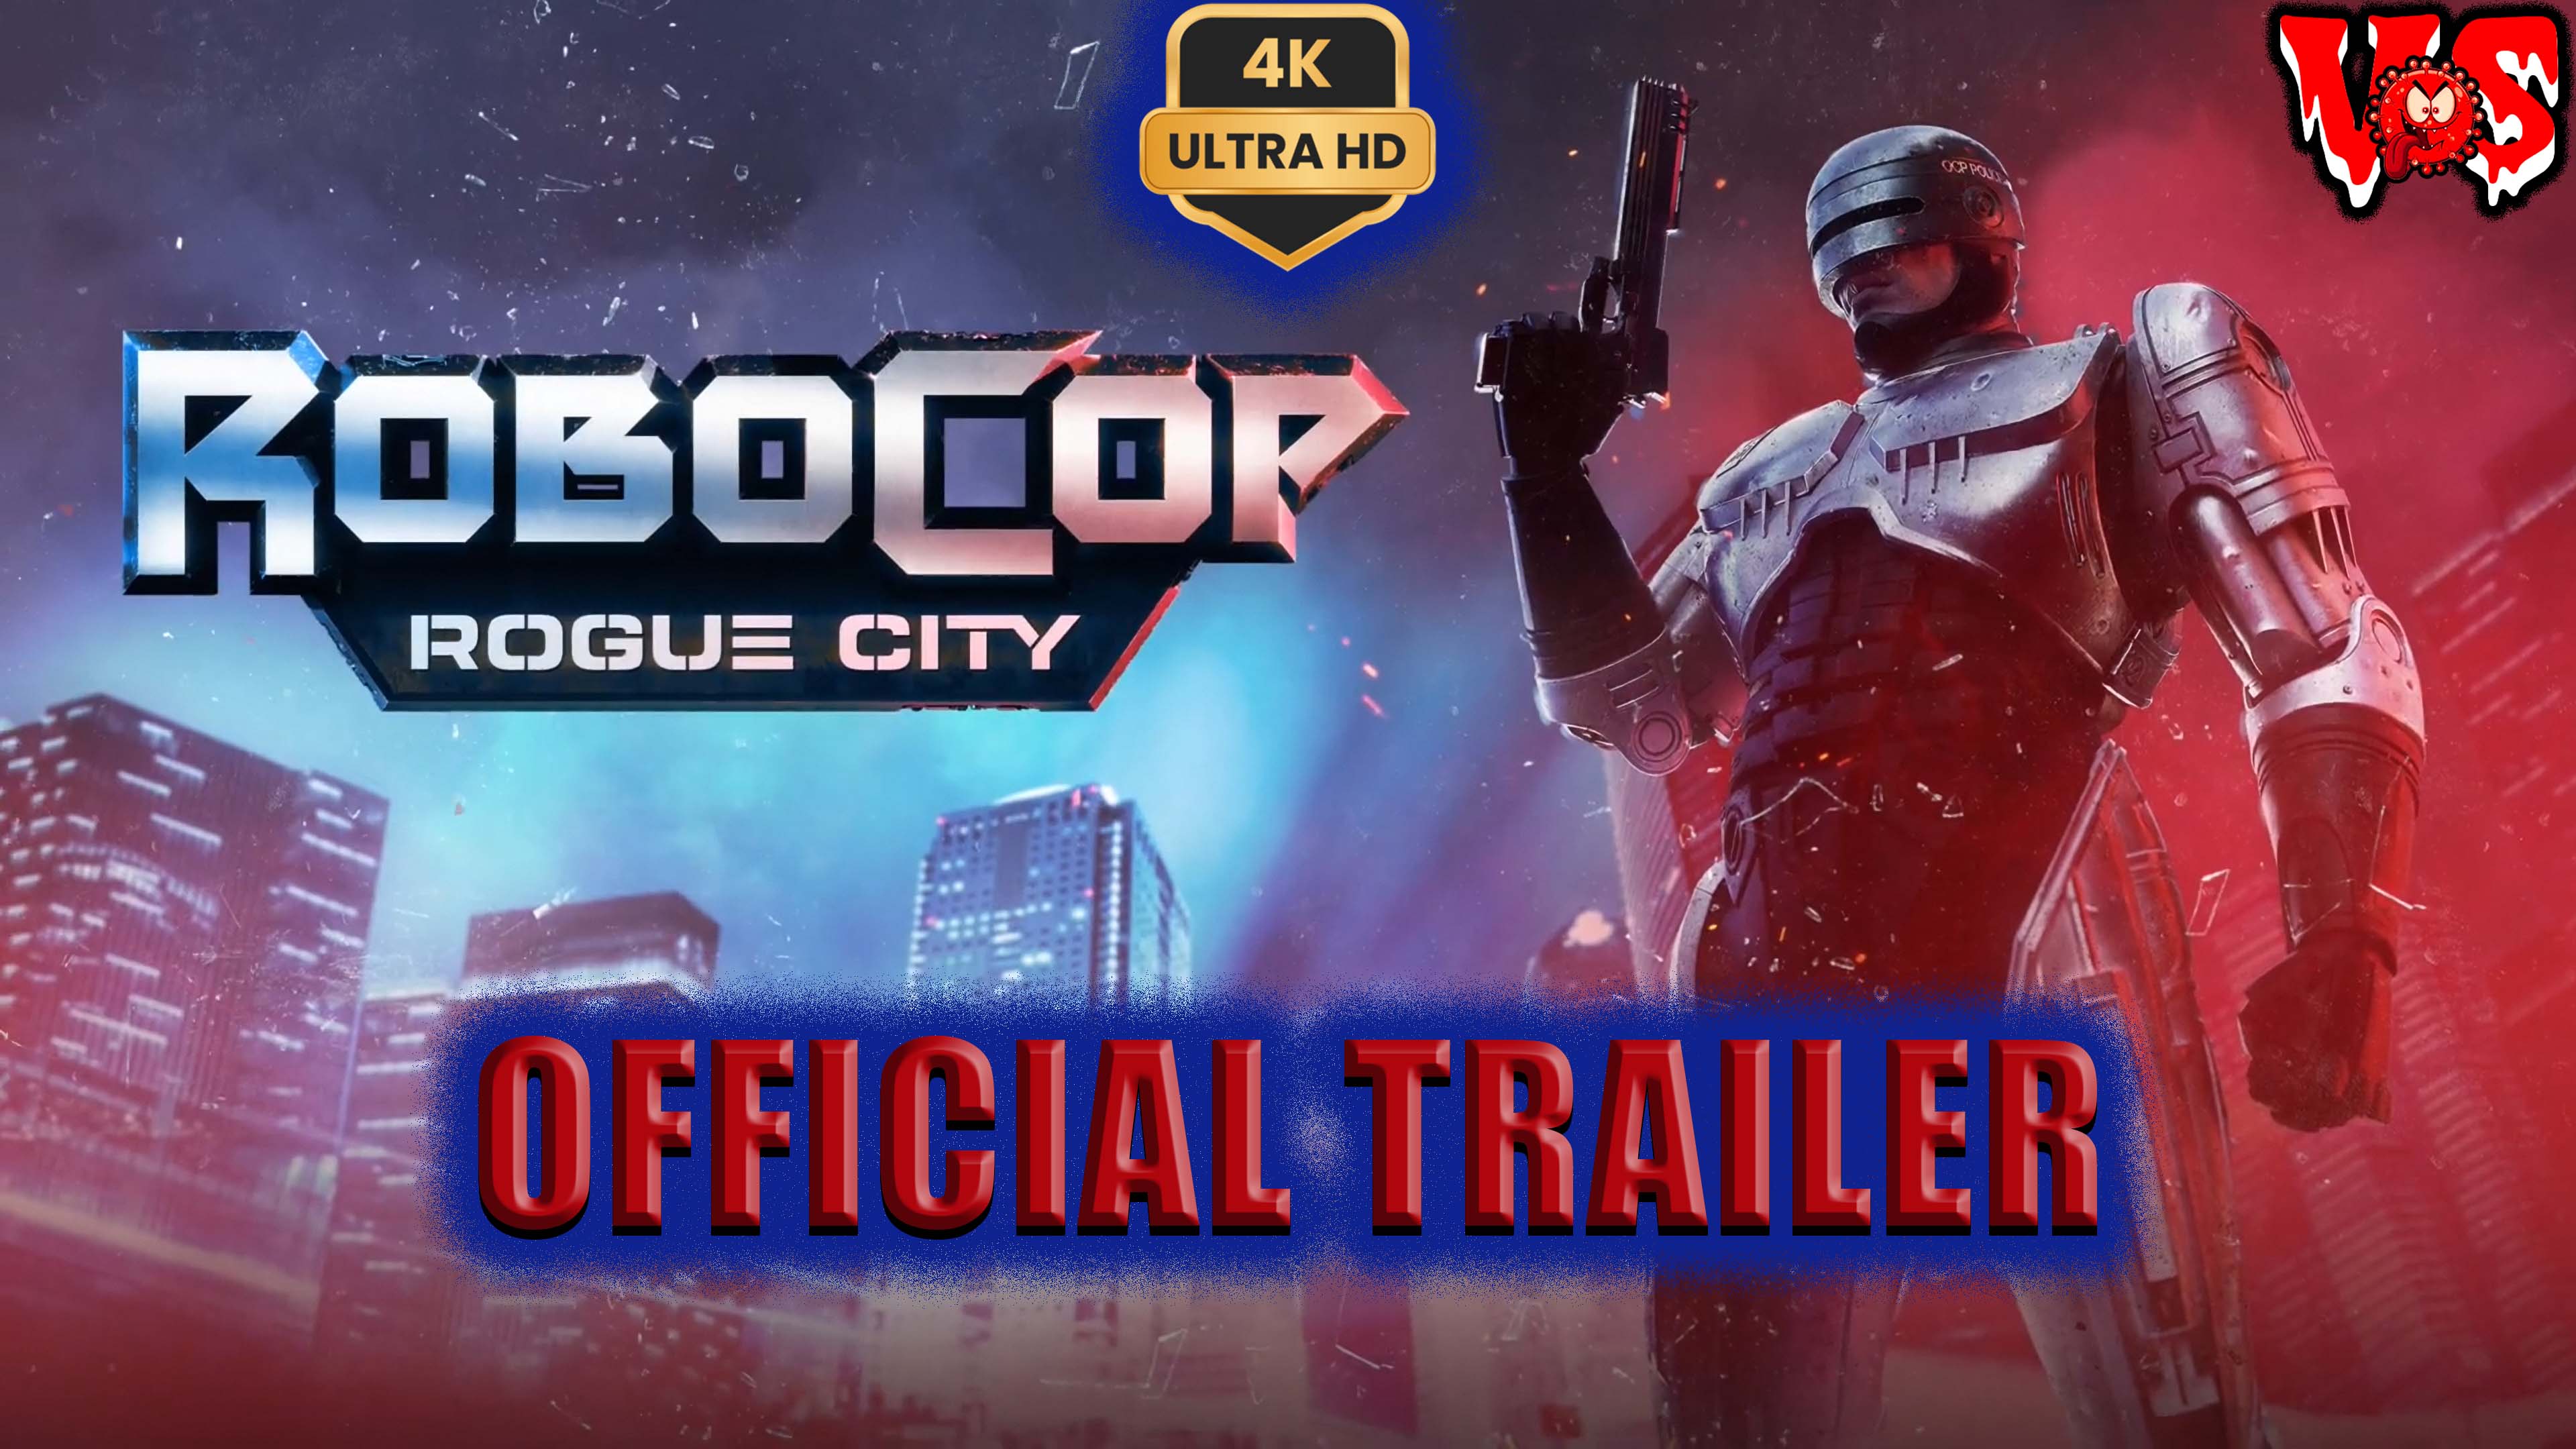 RoboCop Rogue City ➤ Официальный трейлер 💥4K-UHD💥